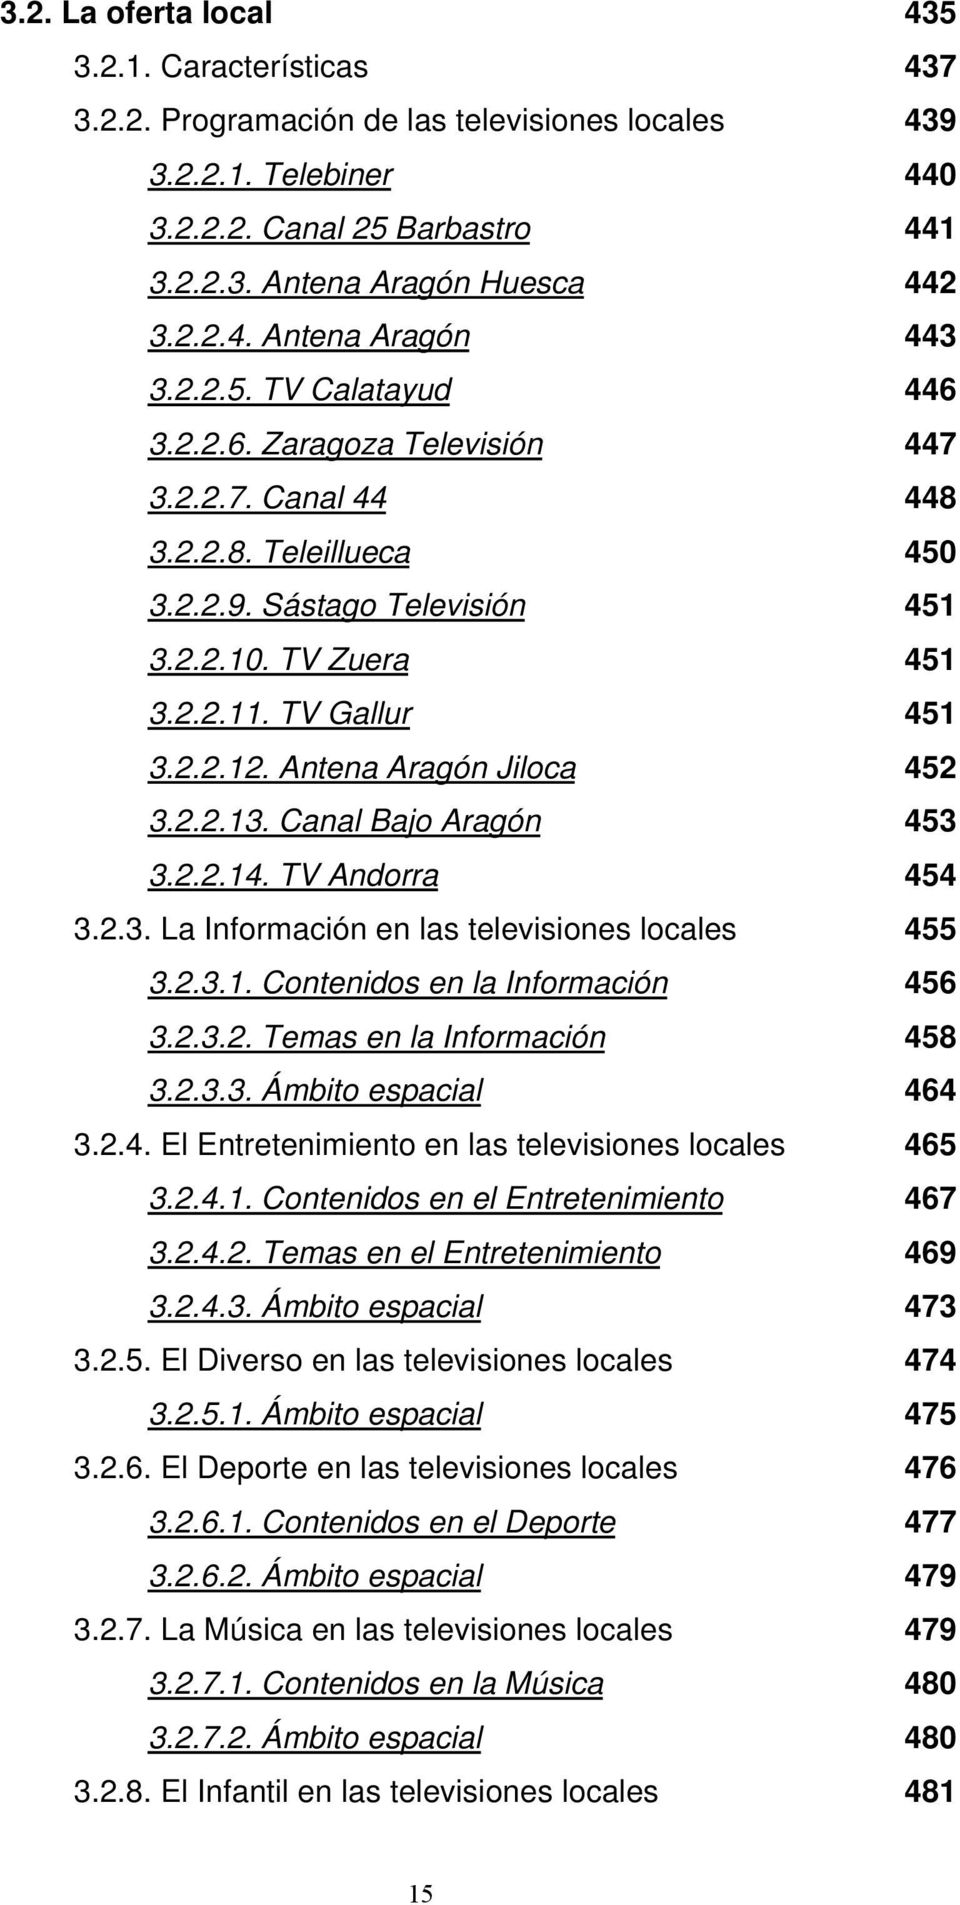 Antena Aragón Jiloca 452 3.2.2.13. Canal Bajo Aragón 453 3.2.2.14. TV Andorra 454 3.2.3. La Información en las televisiones locales 455 3.2.3.1. Contenidos en la Información 456 3.2.3.2. Temas en la Información 458 3.